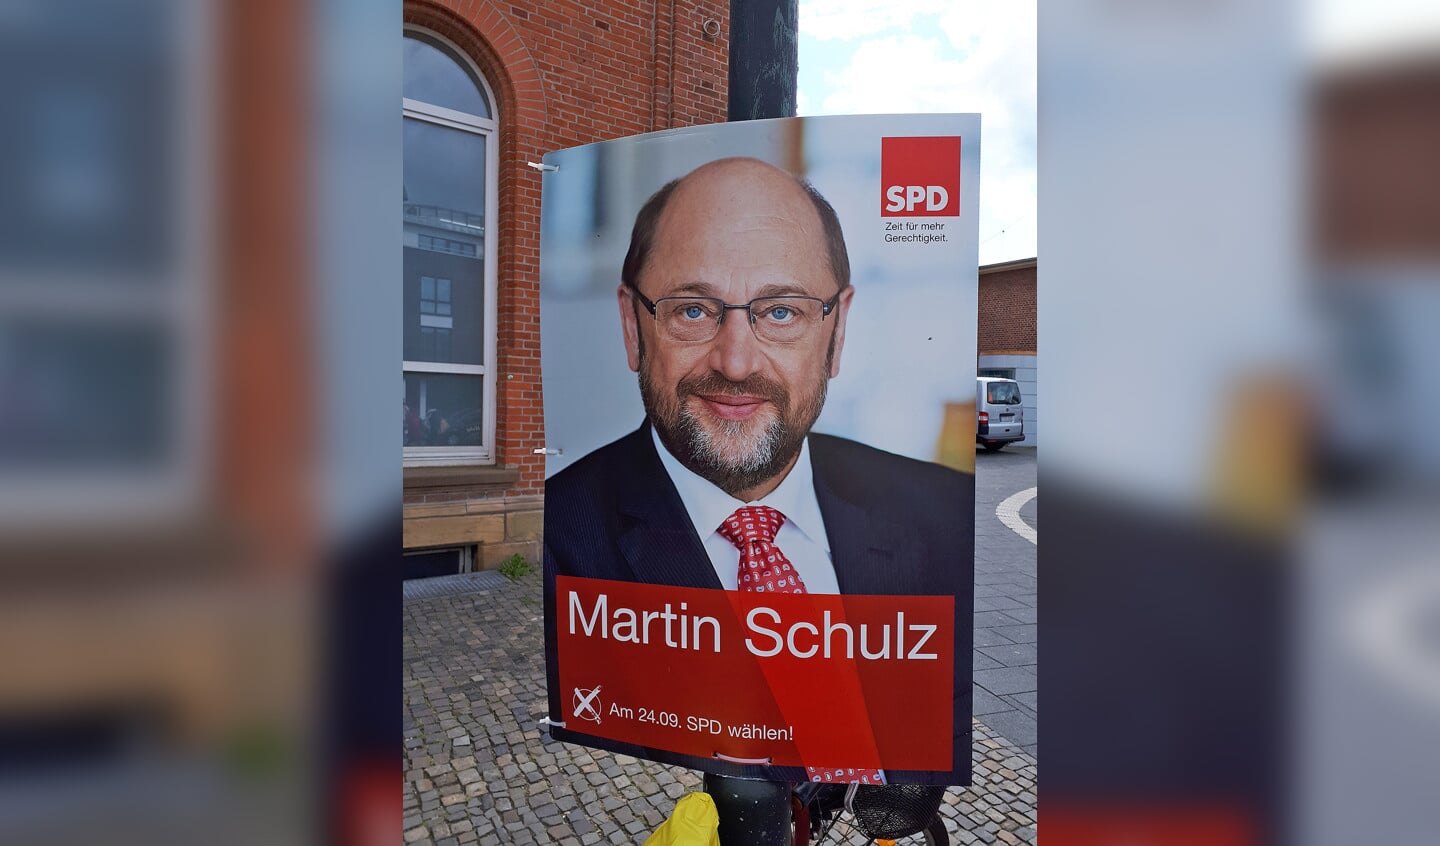 Schulz wil graag een man van het volk zijn.